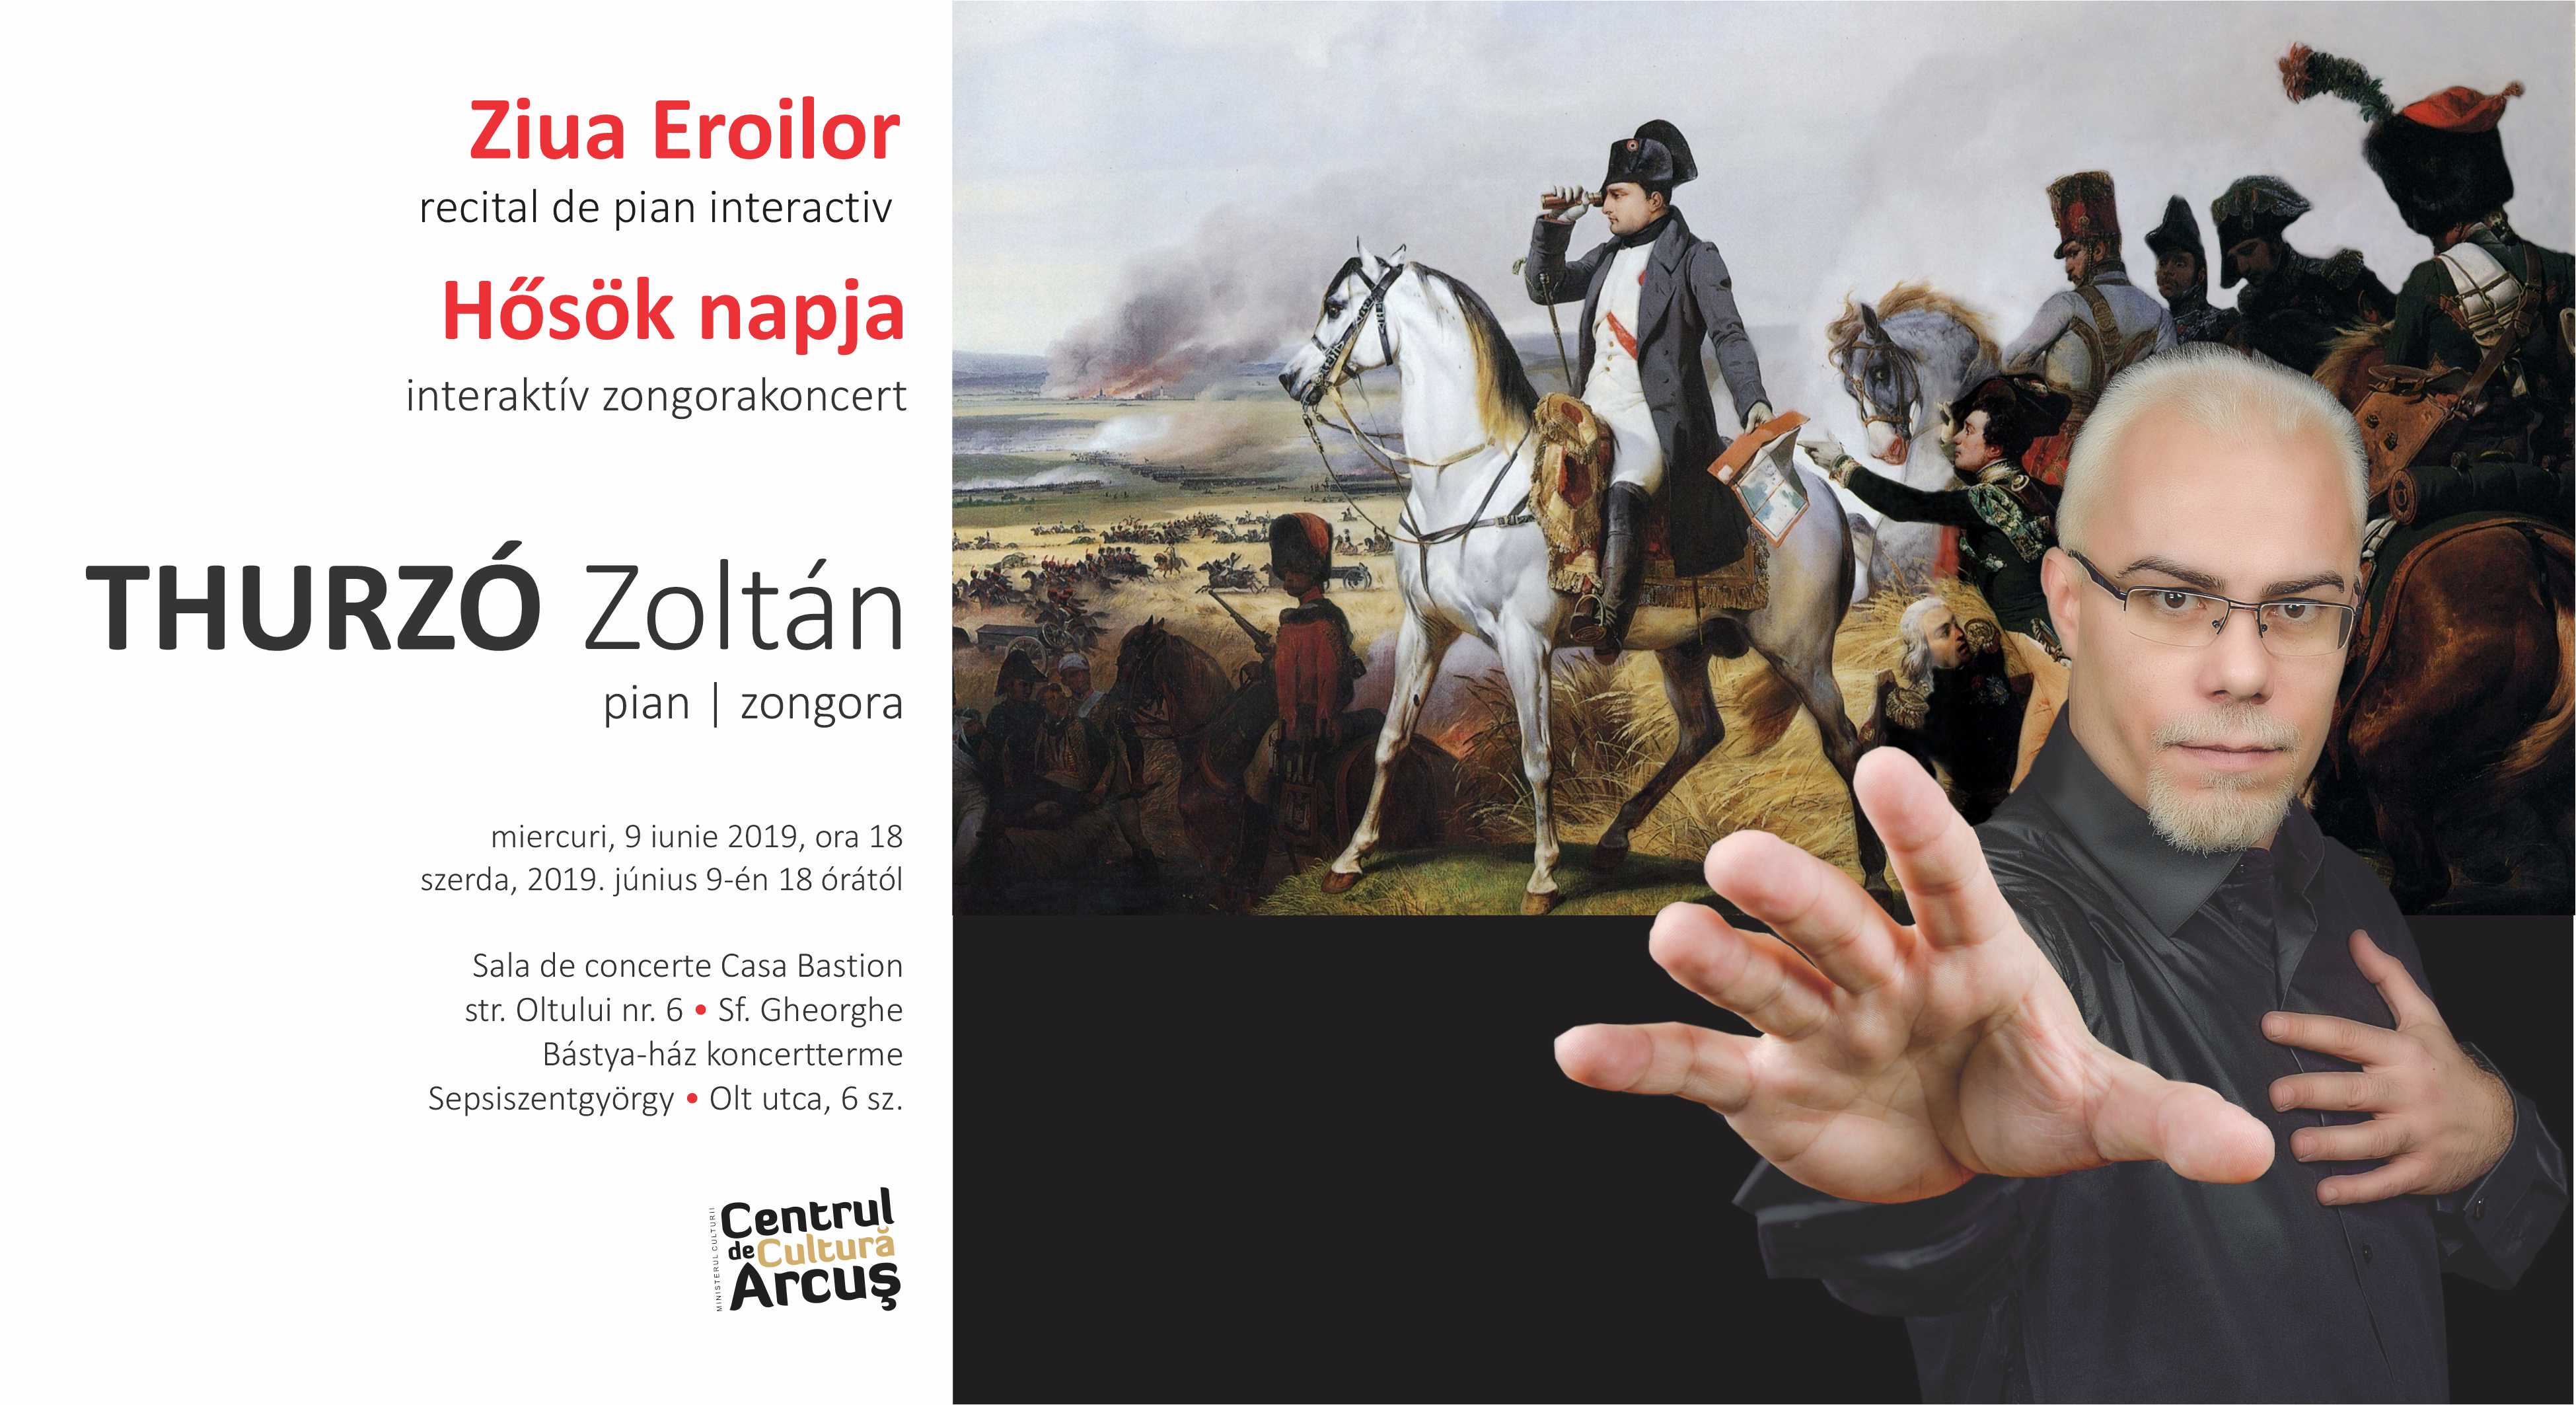 Concert de pian: Thurzó Zoltán - Ziua Eroilor